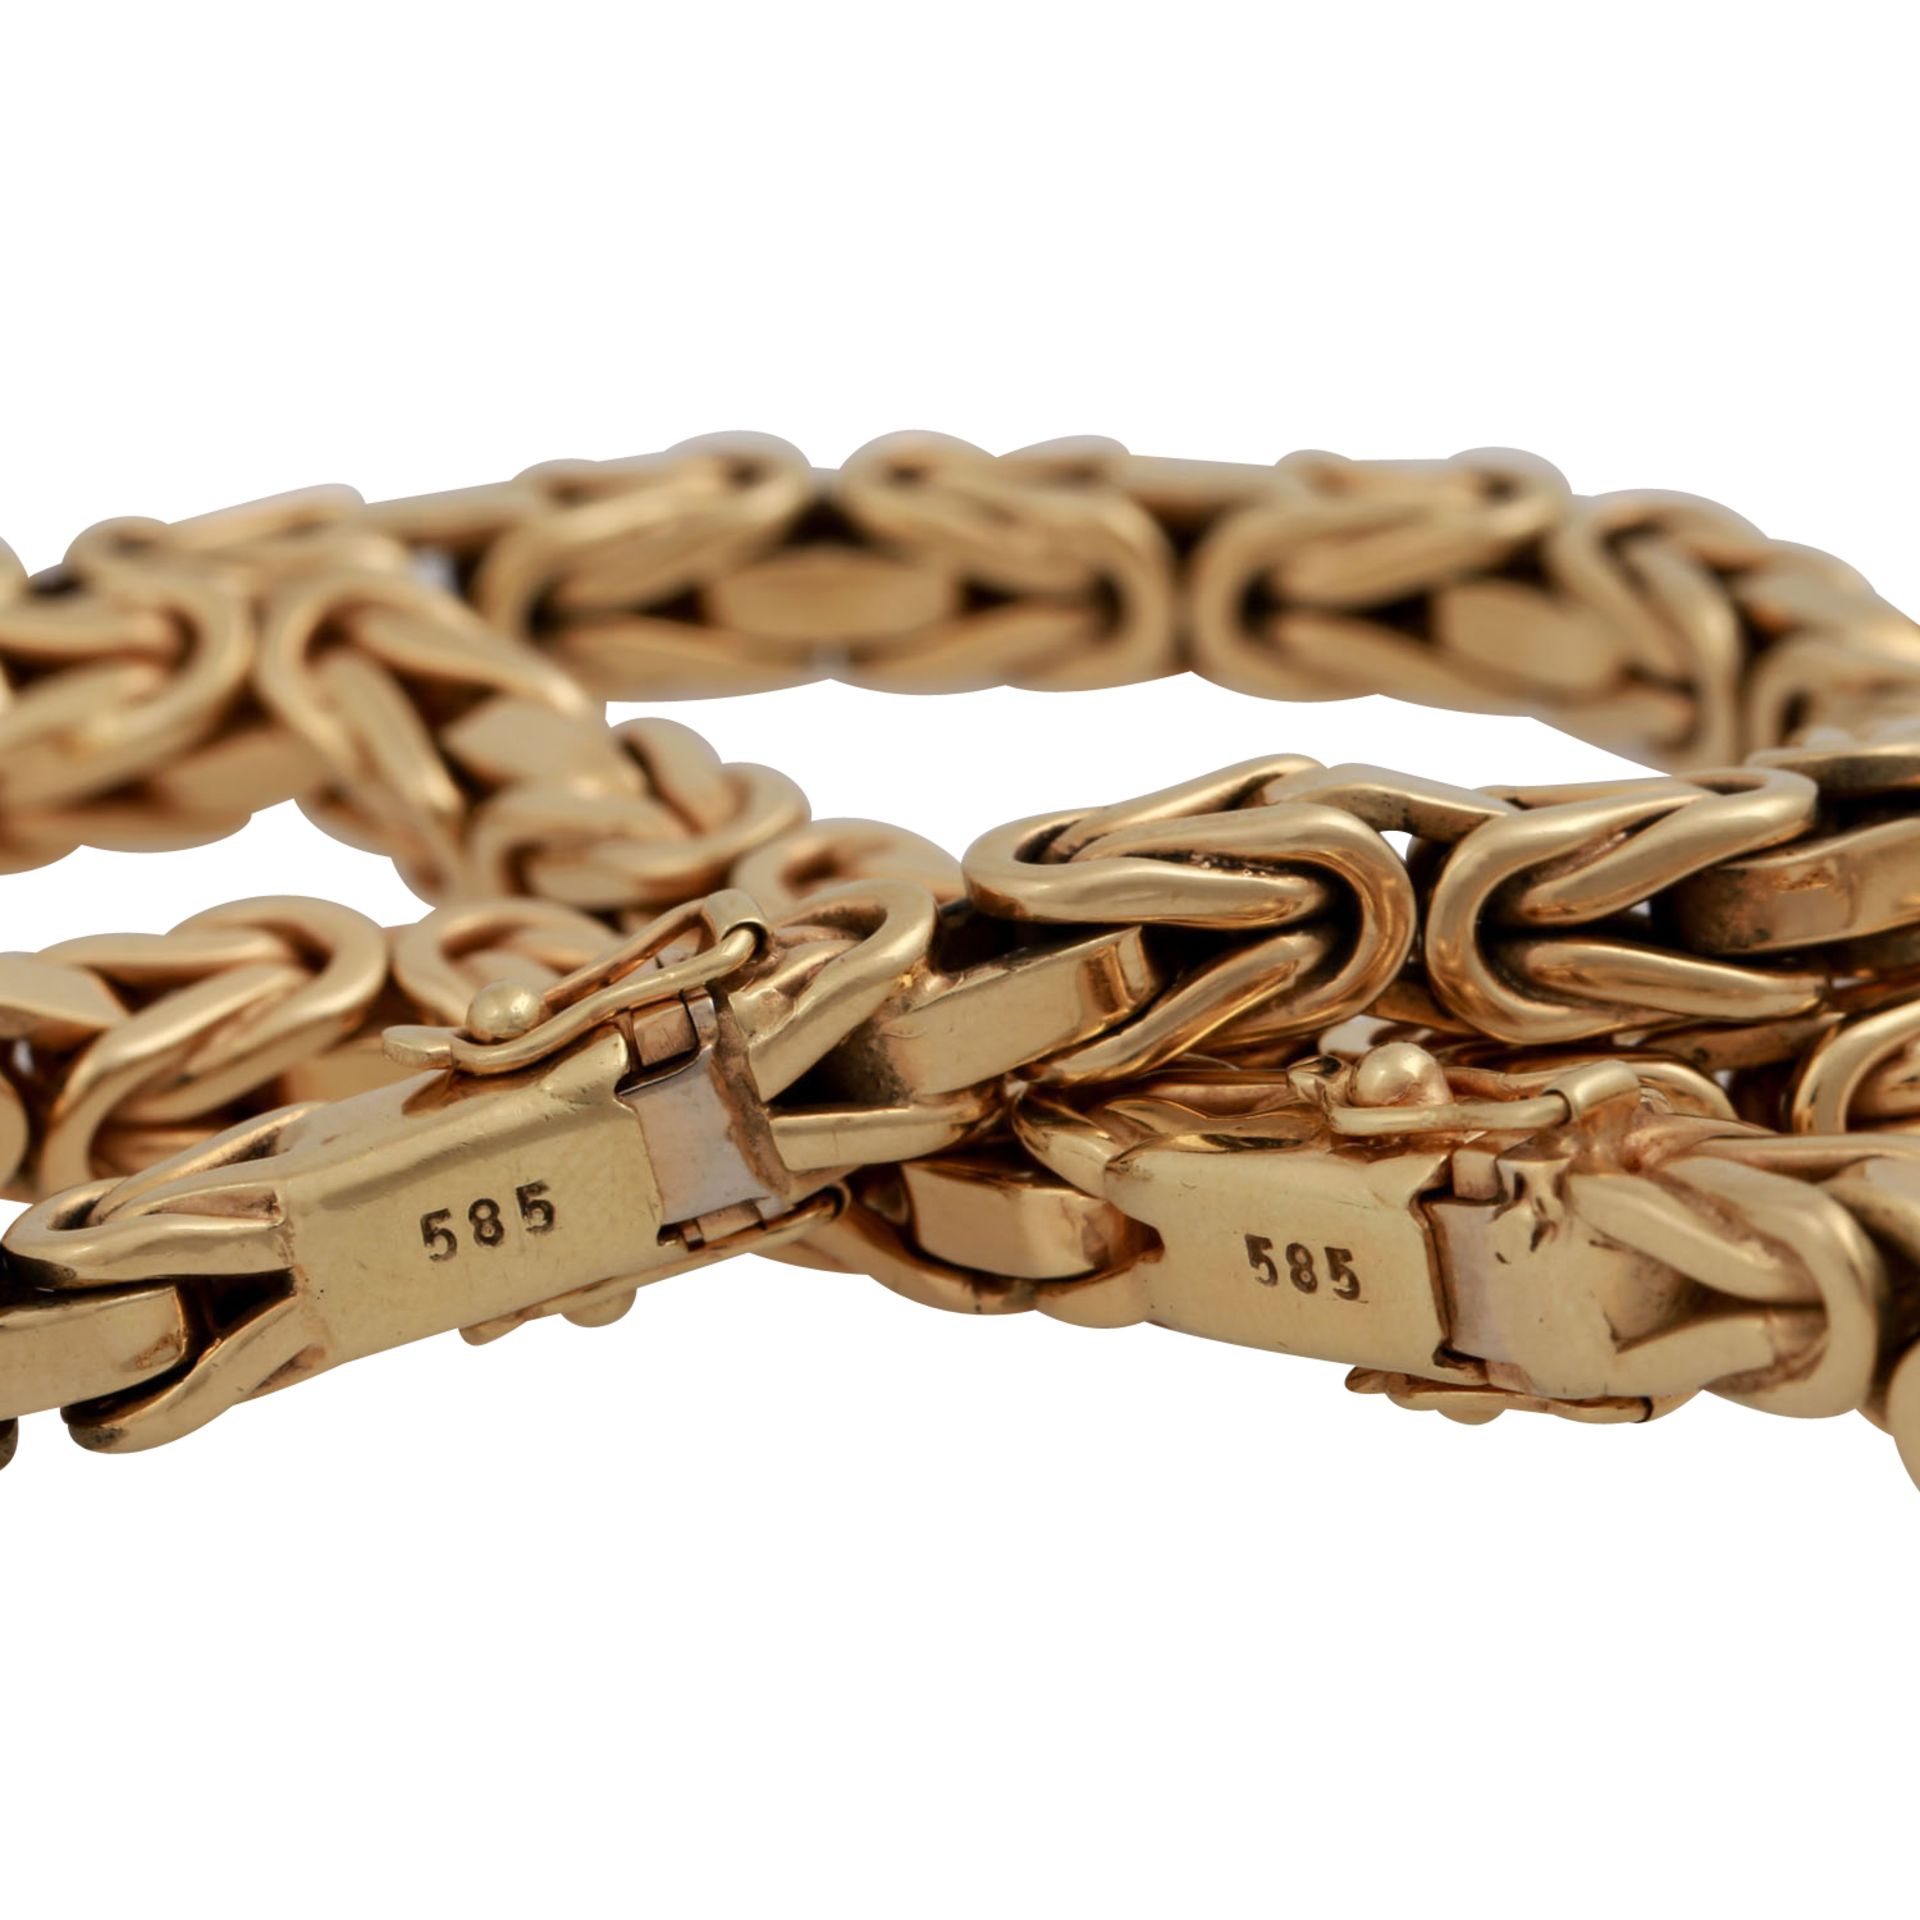 PFANDAUKTION - 1 Kette und Armband, Gold 14K.(194,6 gr.) Pfandnummer +17843-1208, Lagernummer 17843. - Bild 6 aus 6